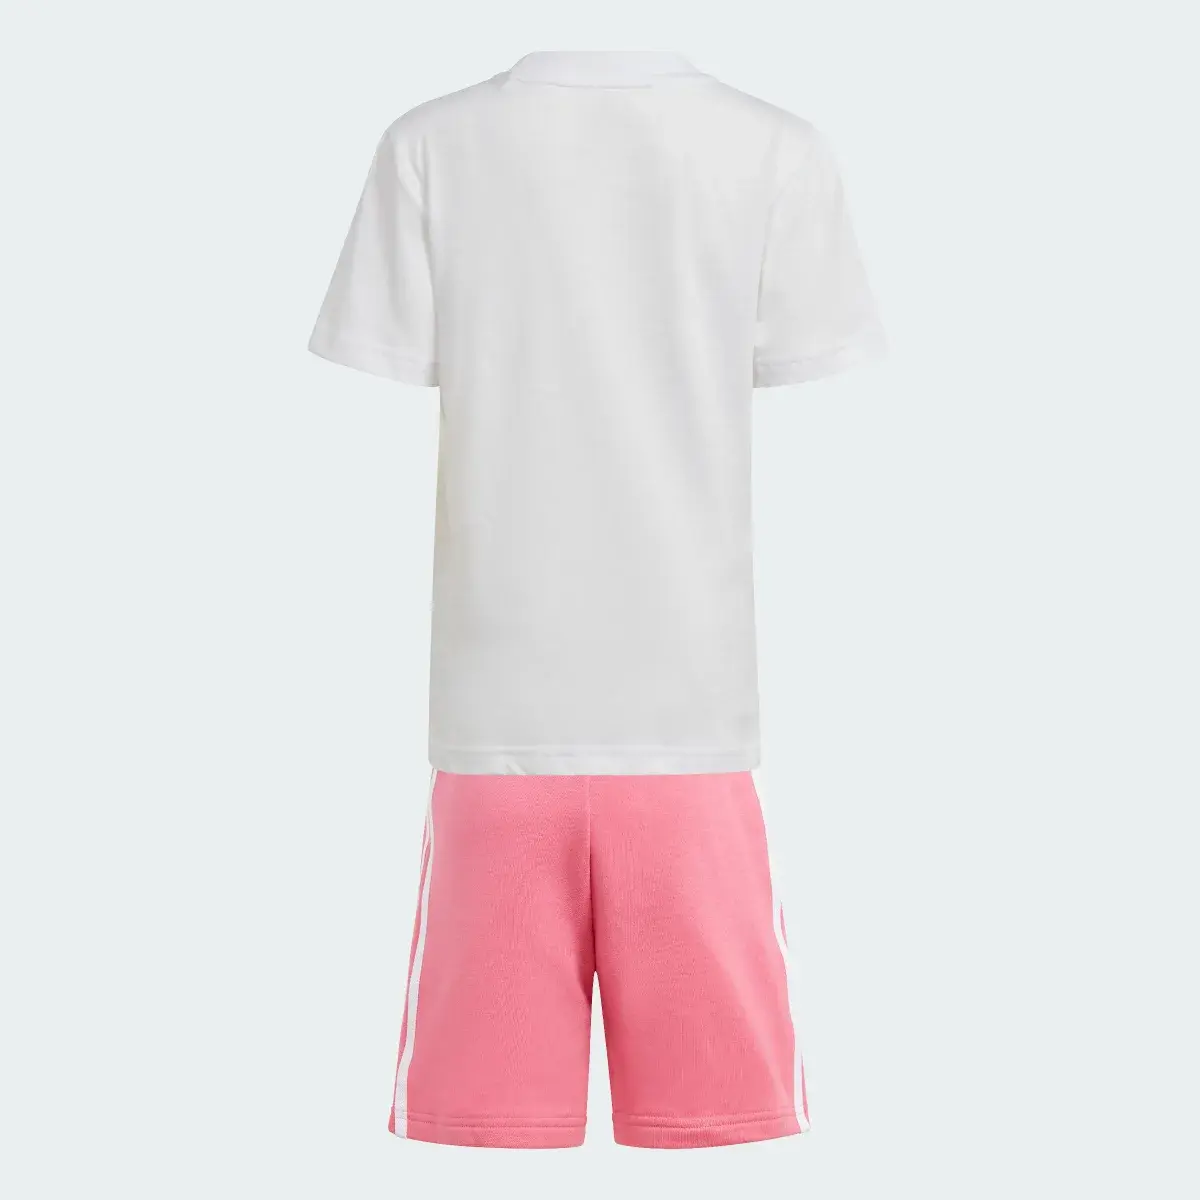 Adidas Adicolor Shorts and Tee Set. 2